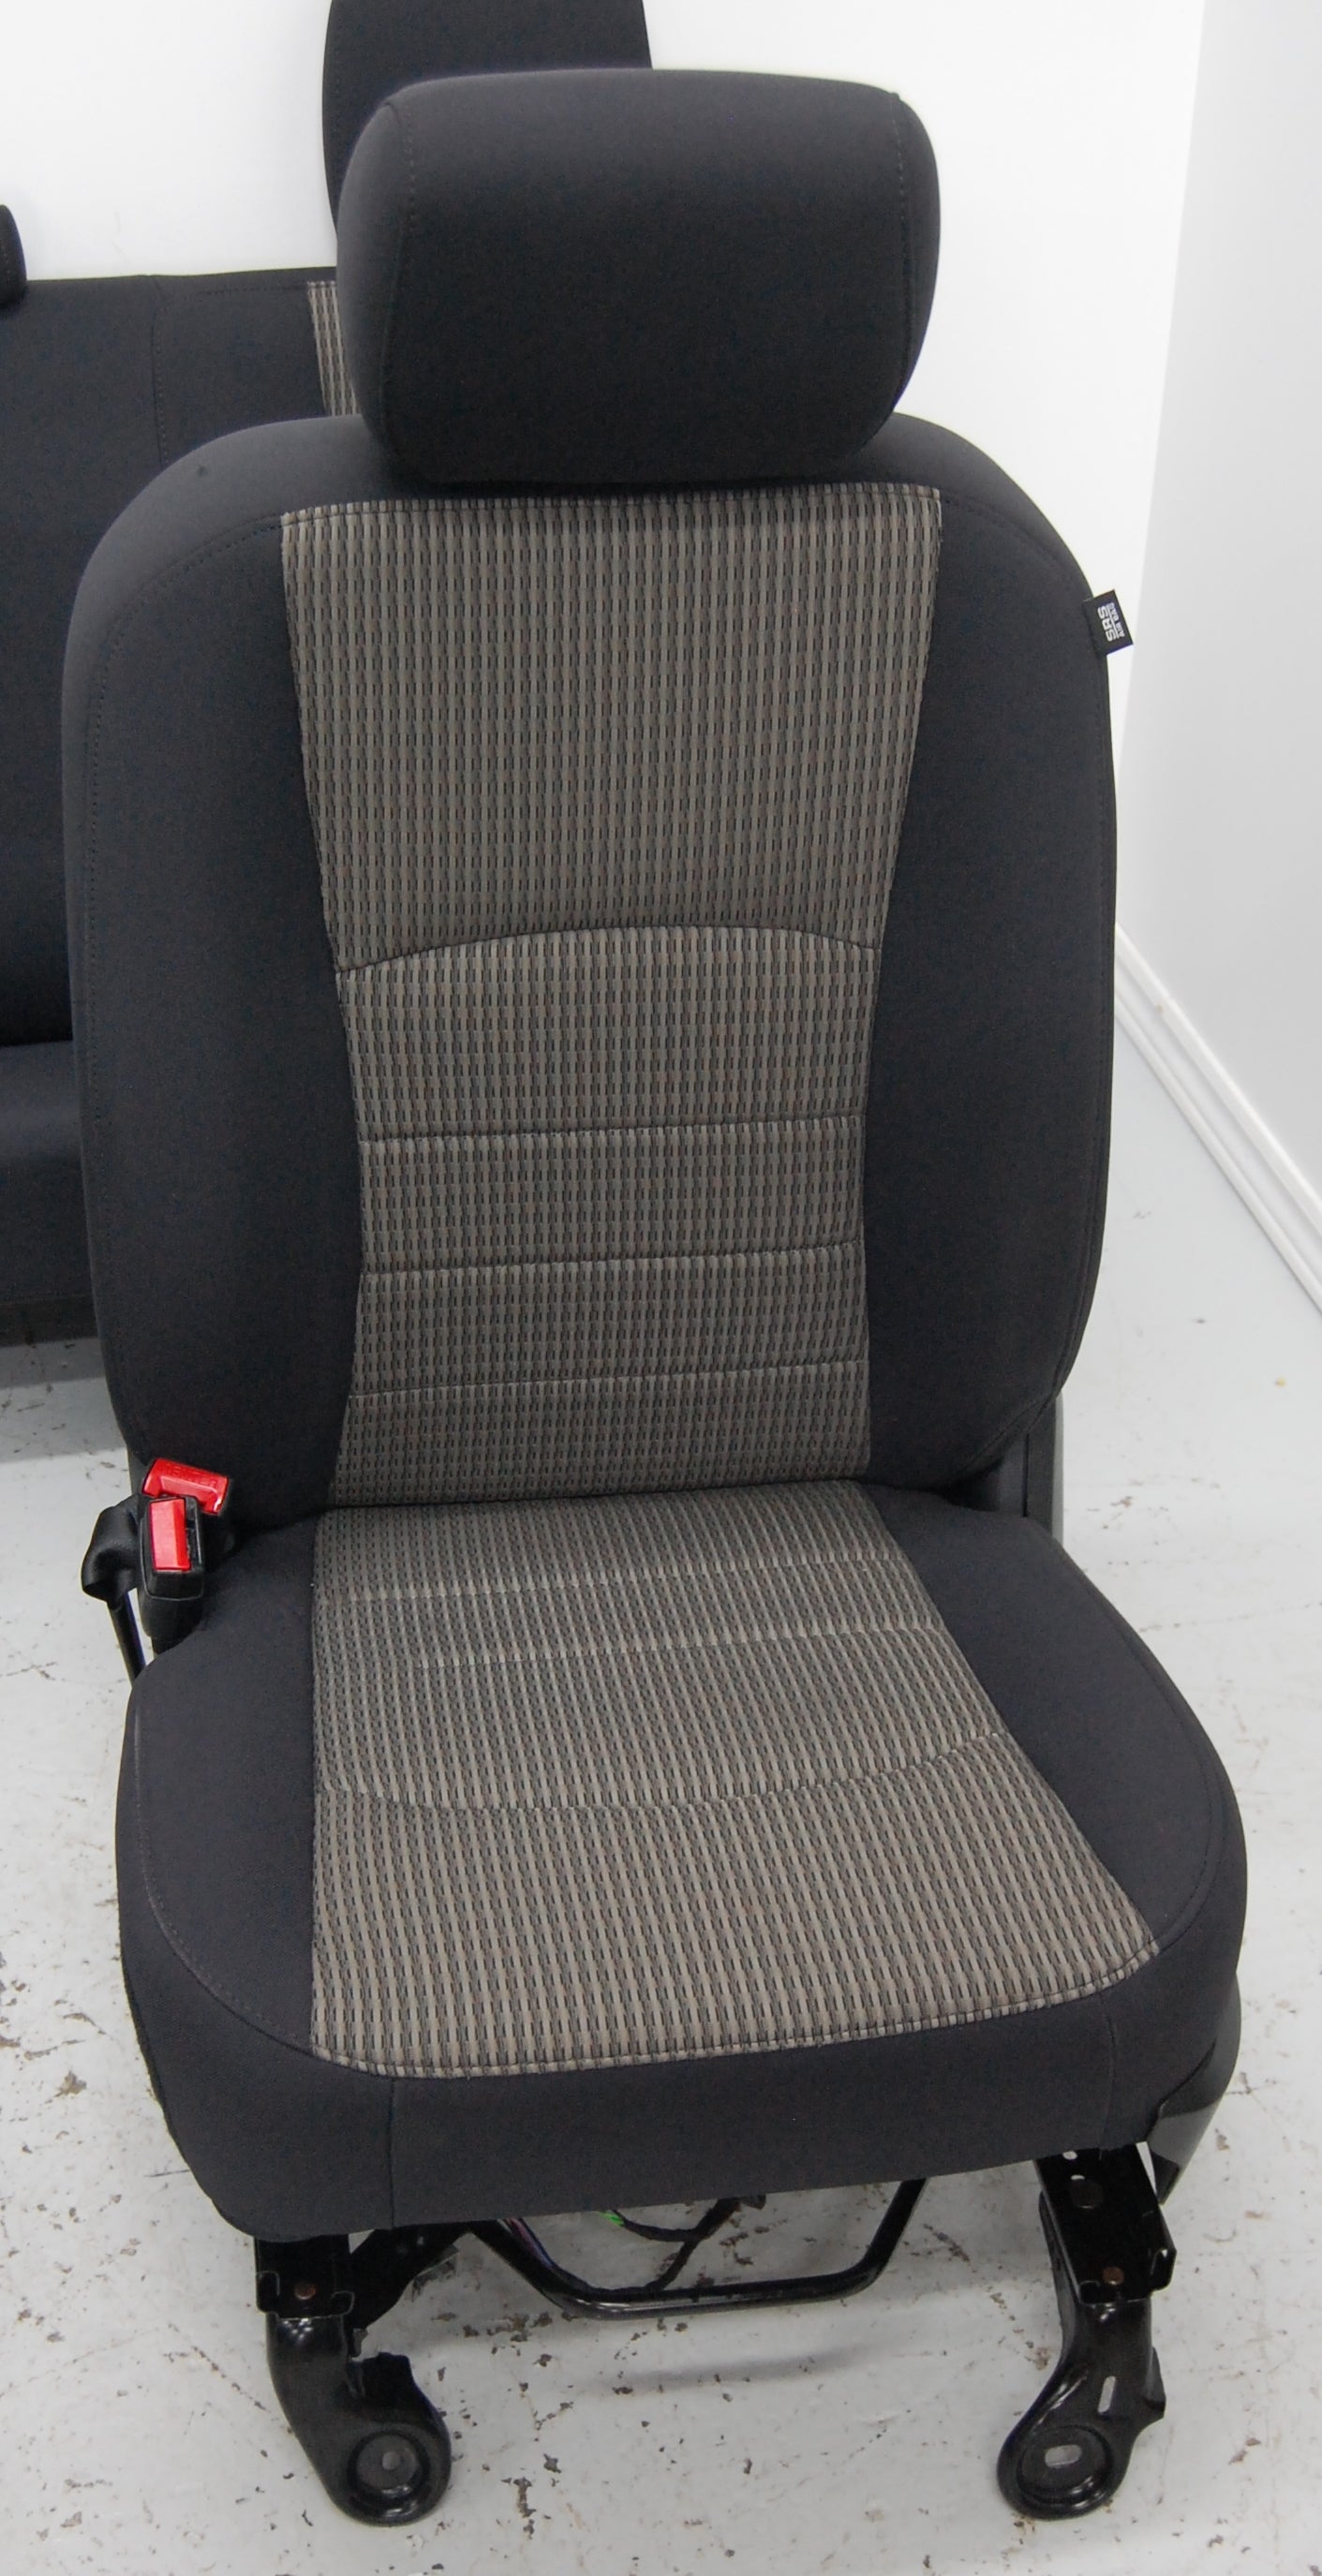 Dodge Ram Quad Cab 2012 Truck Seats & Console Interior